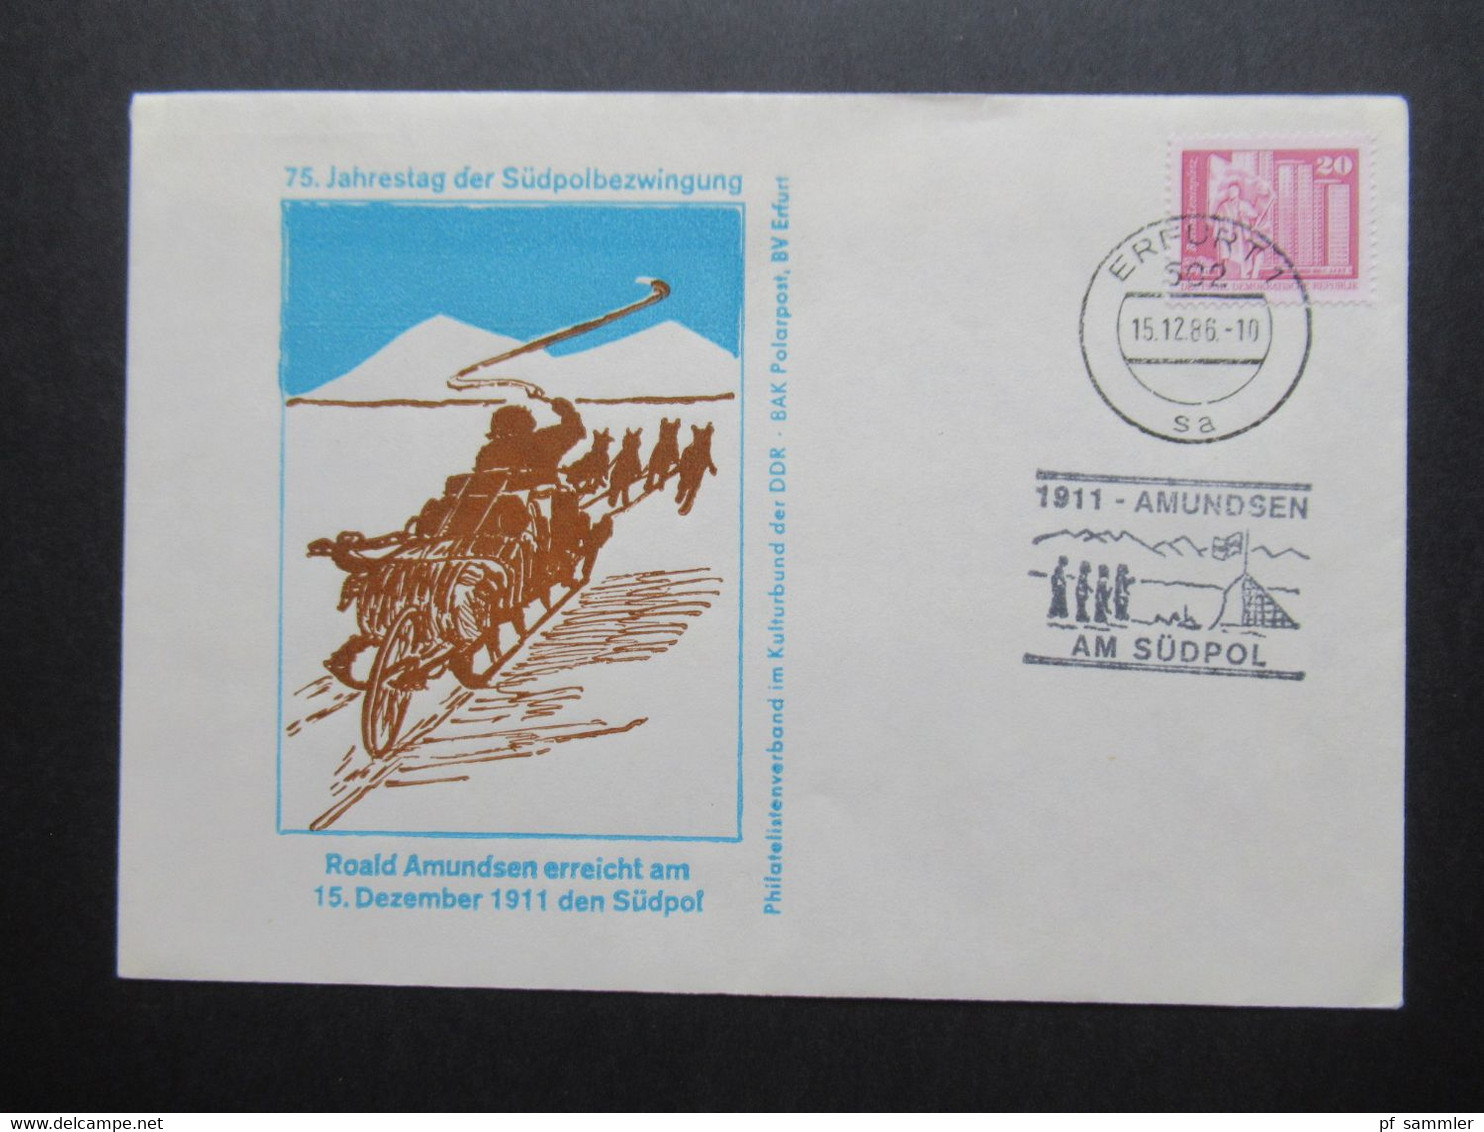 DDR 1980er Jahre 3x Polarpost Amundsen / Antarktisforschung DDR - UdSSR Und British Antarctic Territory. Sonderbelege - Covers & Documents